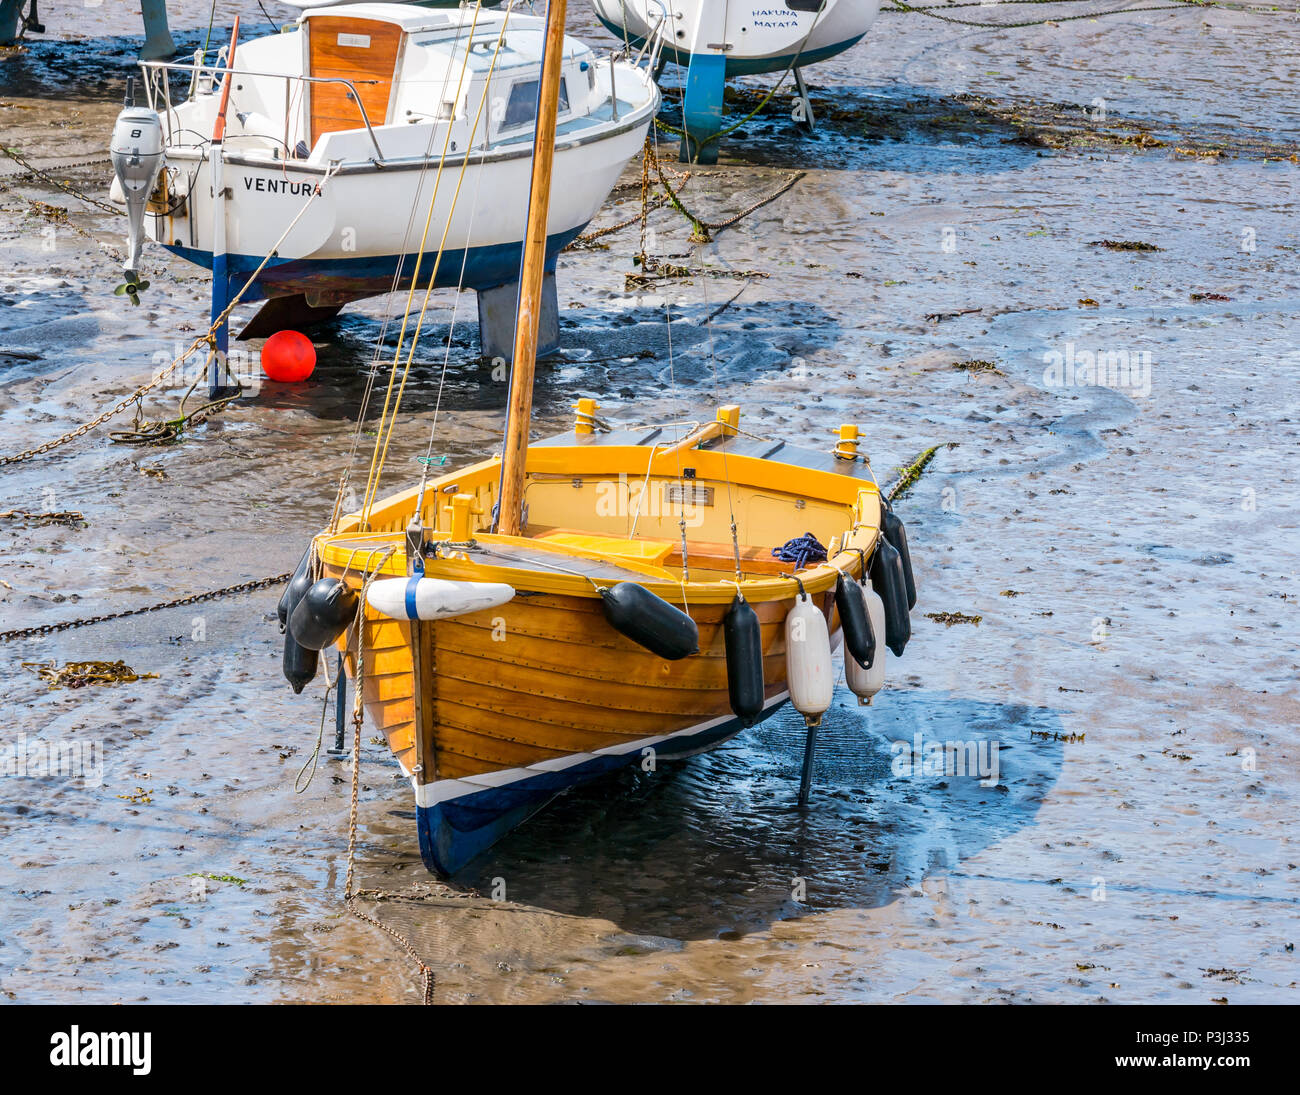 Velero de madera y otros tipos de embarcaciones en el barro durante la marea baja, North Berwick Harbor, East Lothian, Escocia, Reino Unido Foto de stock